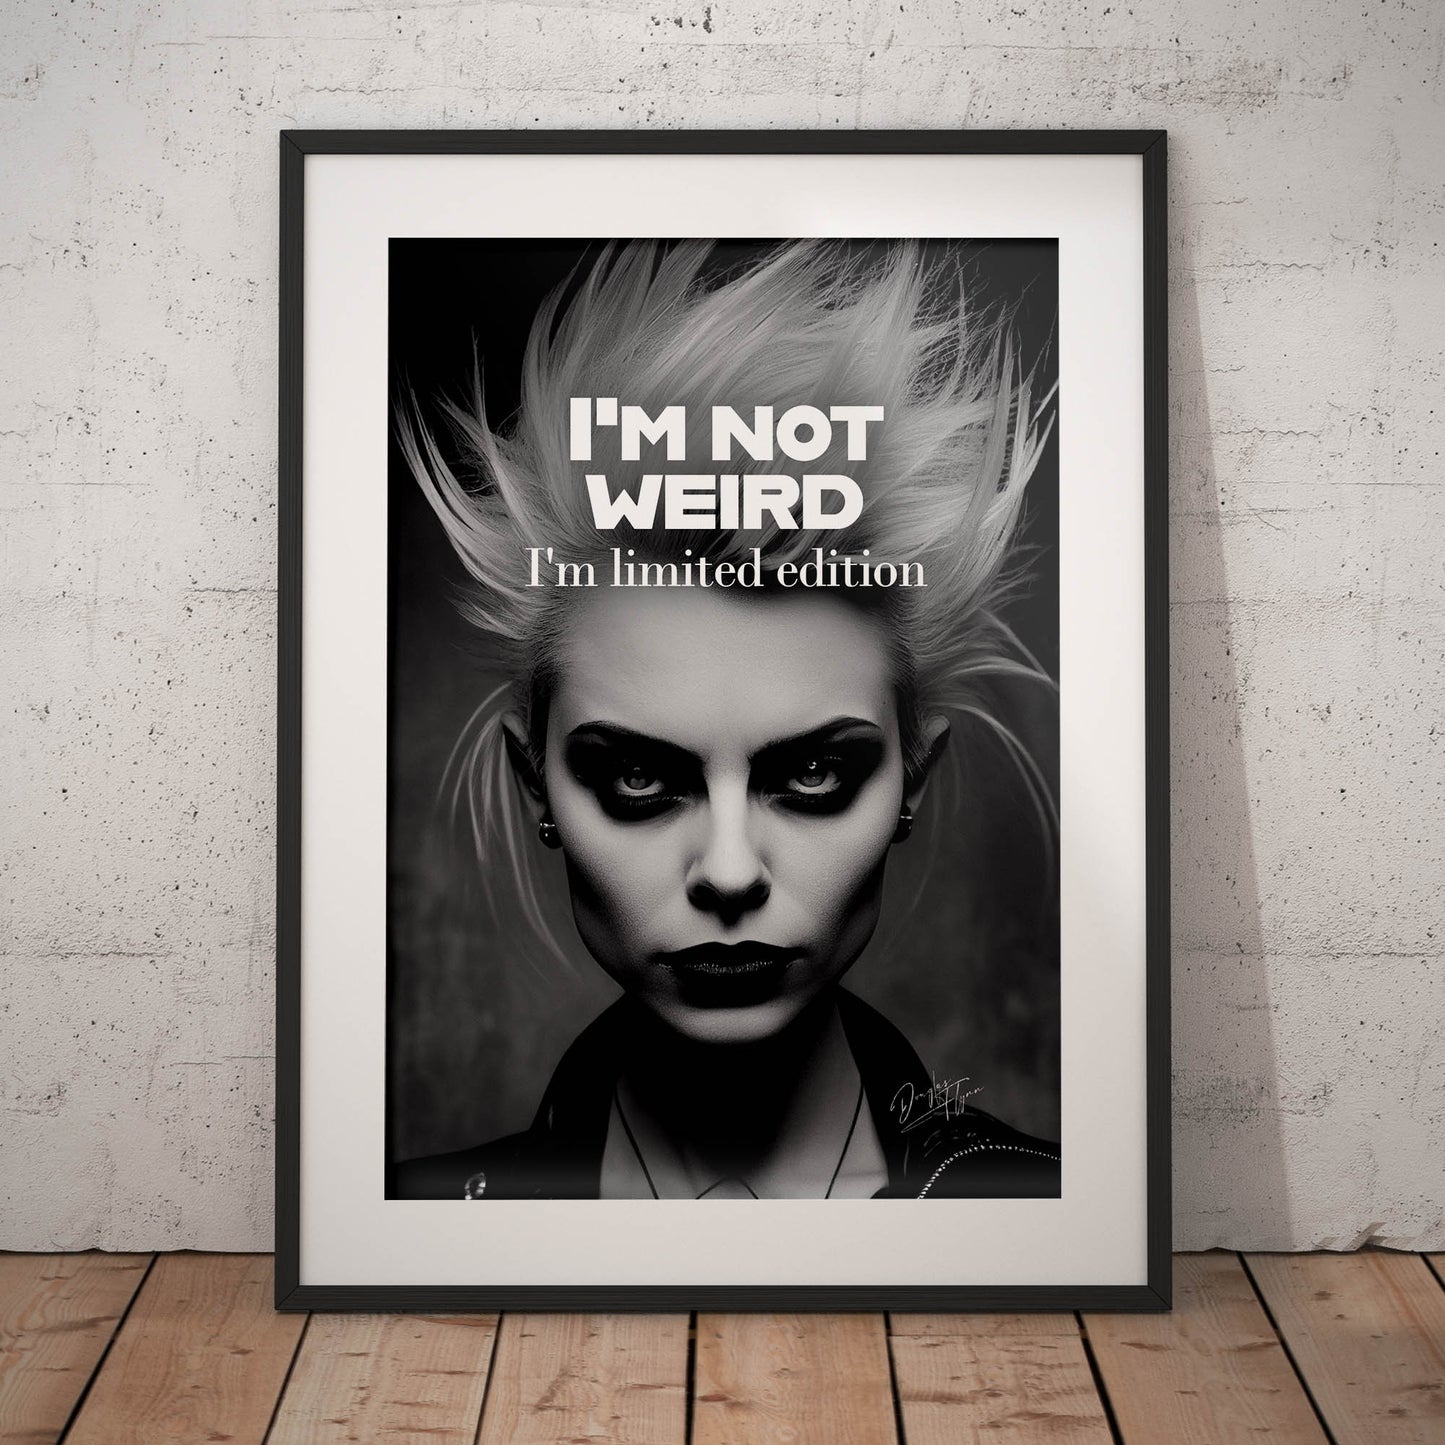 »Im Not Weird« retro poster